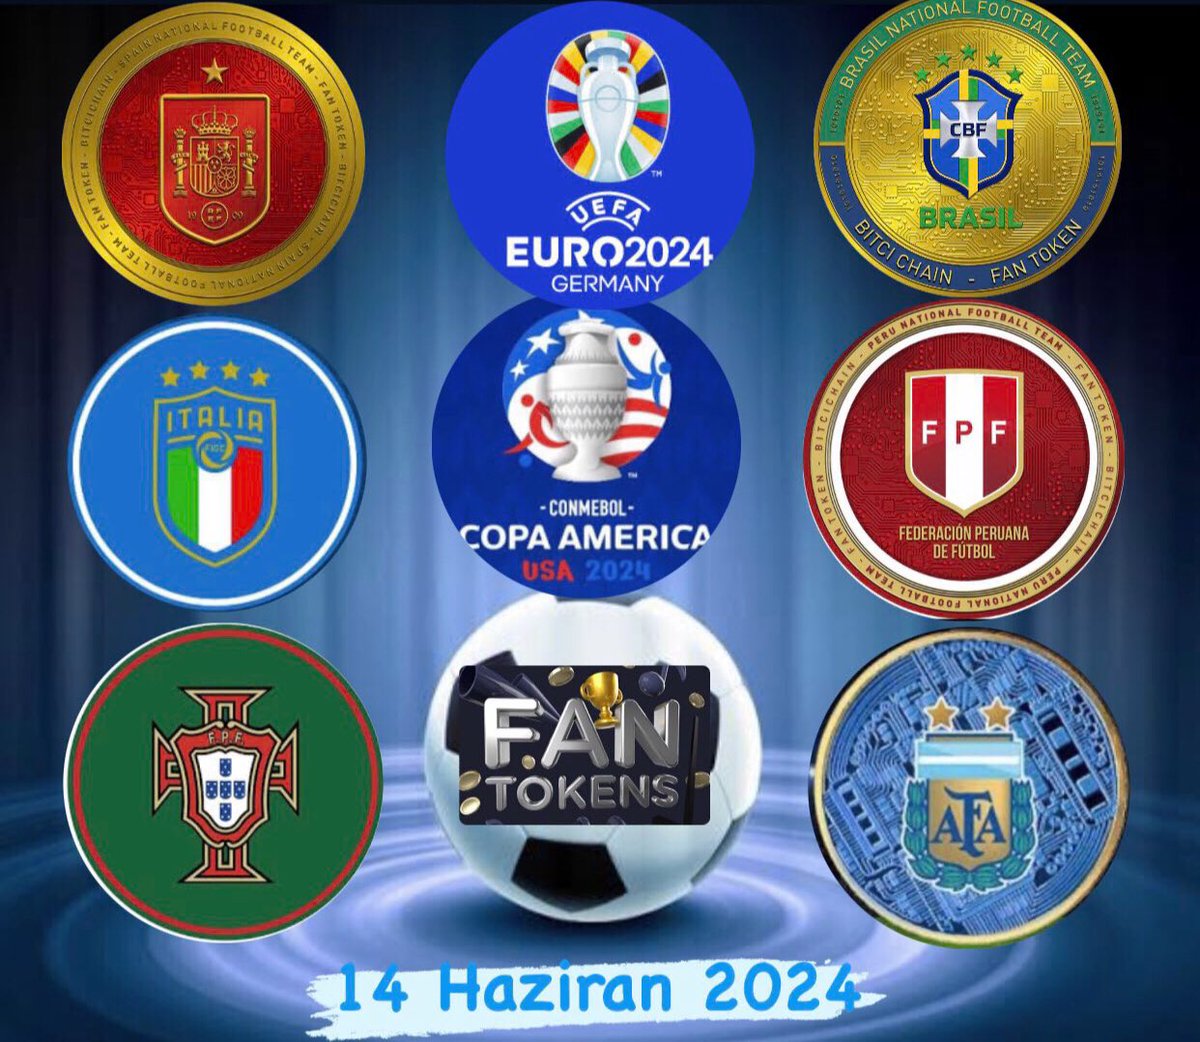 #Şampiyonlarligi #Futbol #Btc 

 #Fantoken takımlarından ;

Son takım Dün #PSG elendi

#Inter Şampiyon oldu 

#GS Şampiyon oldu gibi 

#Göz #Süperlig e yükseldi

ARTIK HİKAYELER BİTTİ ✅ 

🚨🚨🚨

Sıra #MİLLİTAKIM larda

#Euro2024 @CopaAmerica 

Son 36 Gün !!

🇧🇷🇪🇸🇵🇪🇮🇹🇦🇷🇵🇹